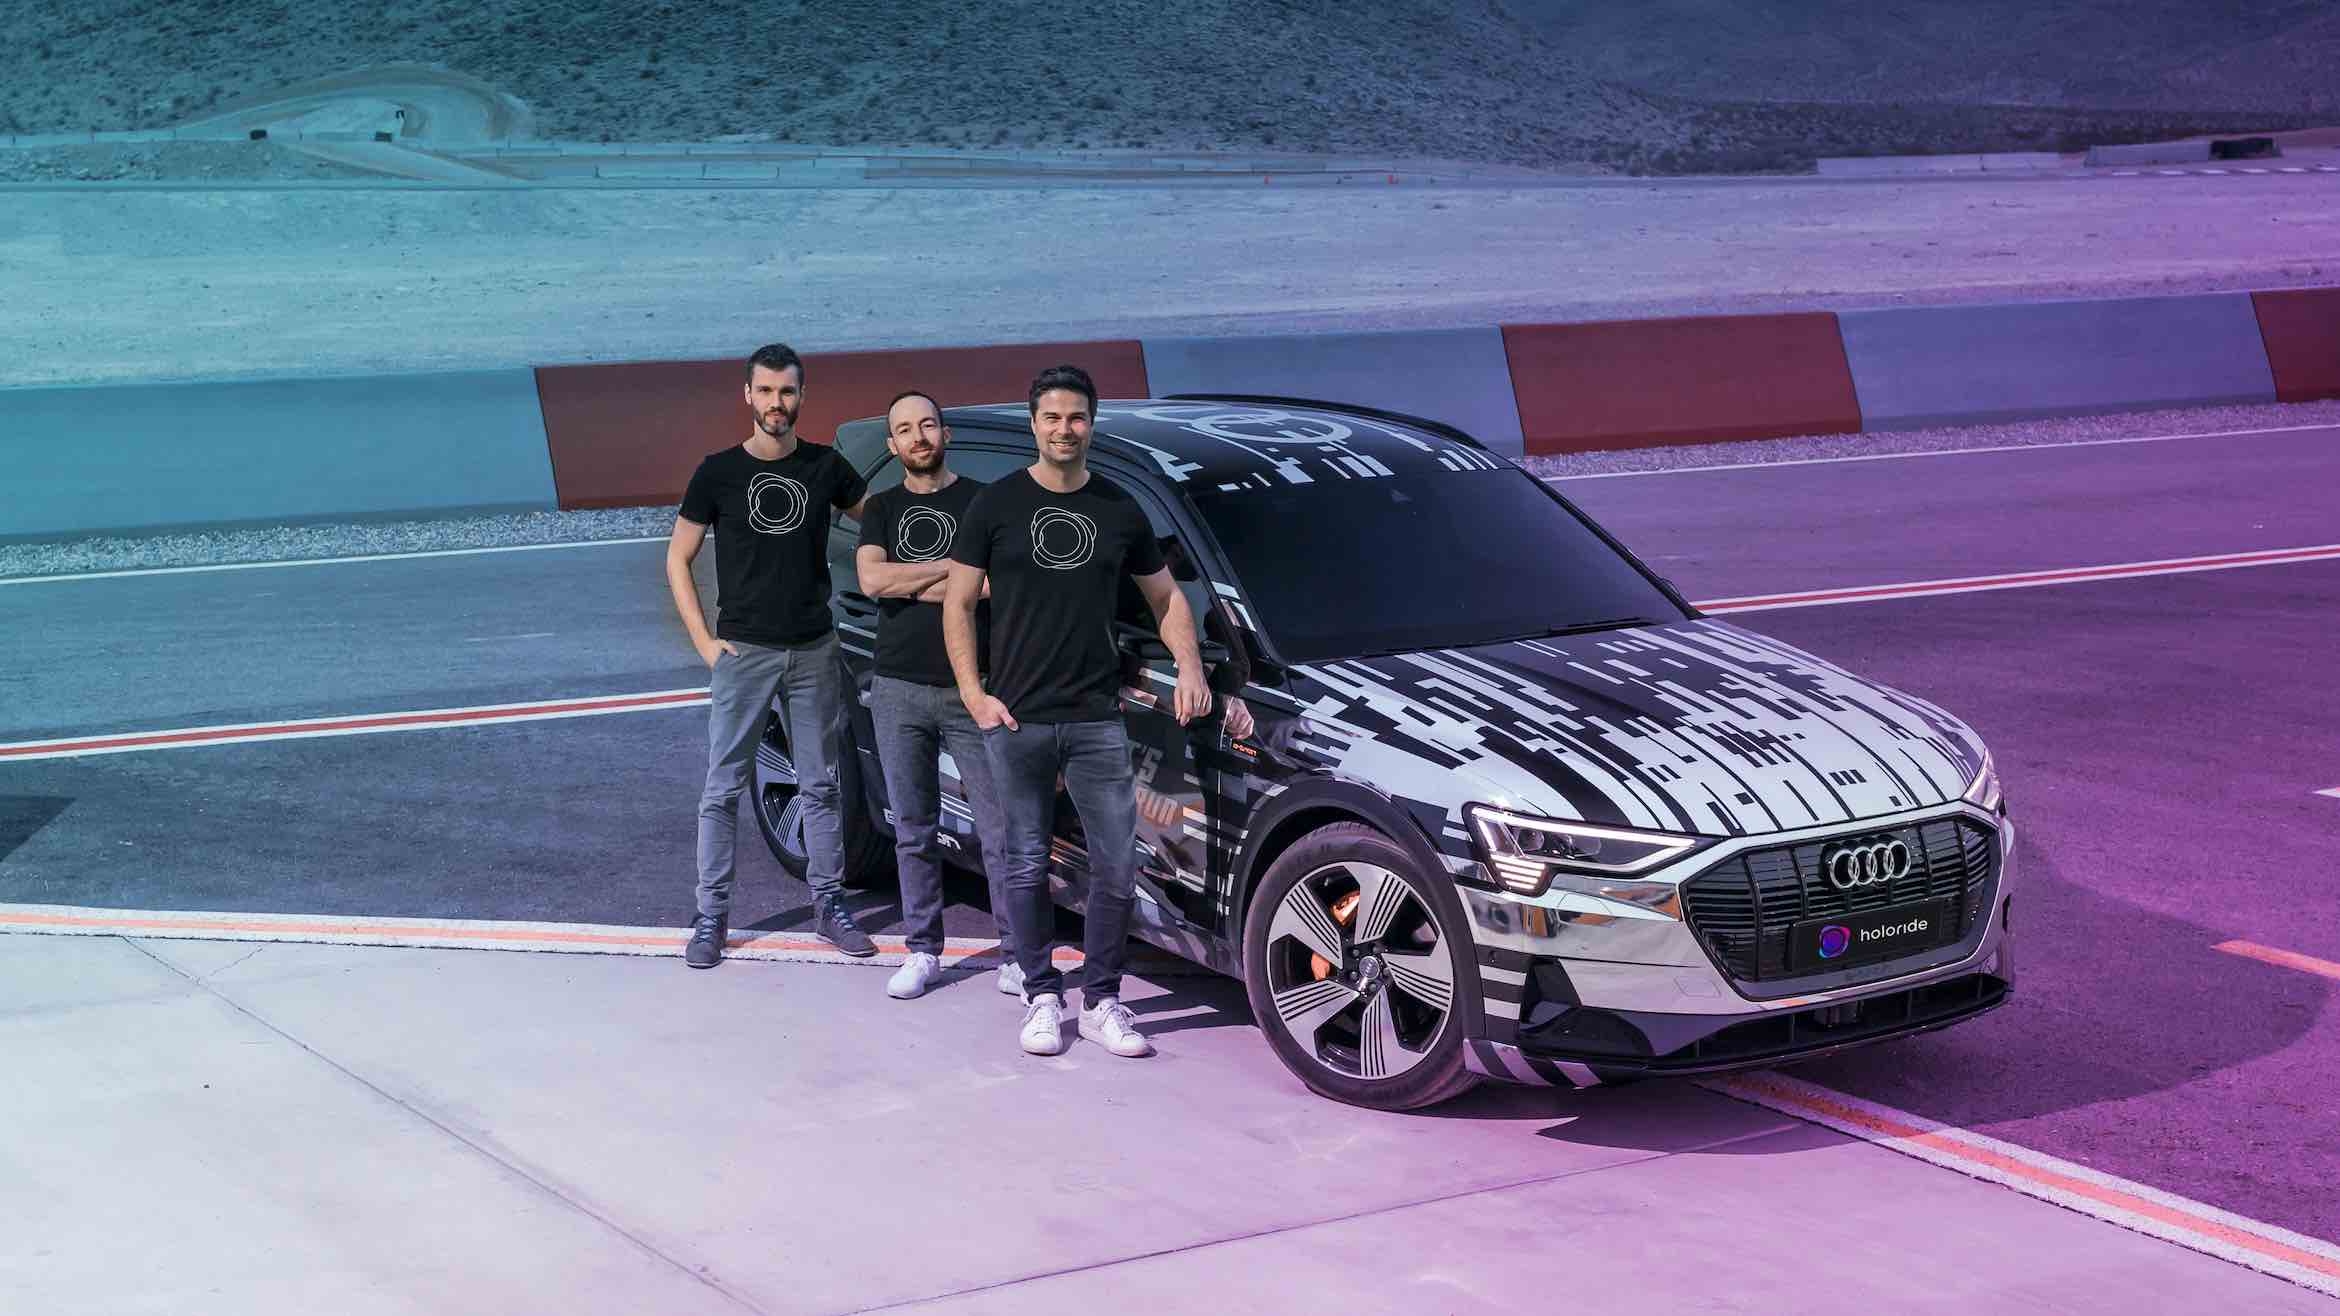 Die Holoride-Gründer Daniel Profendiner, Marcus Kühne und Nils Wollny (v.l.) arbeiteten zuvor gemeinsam bei Audi –